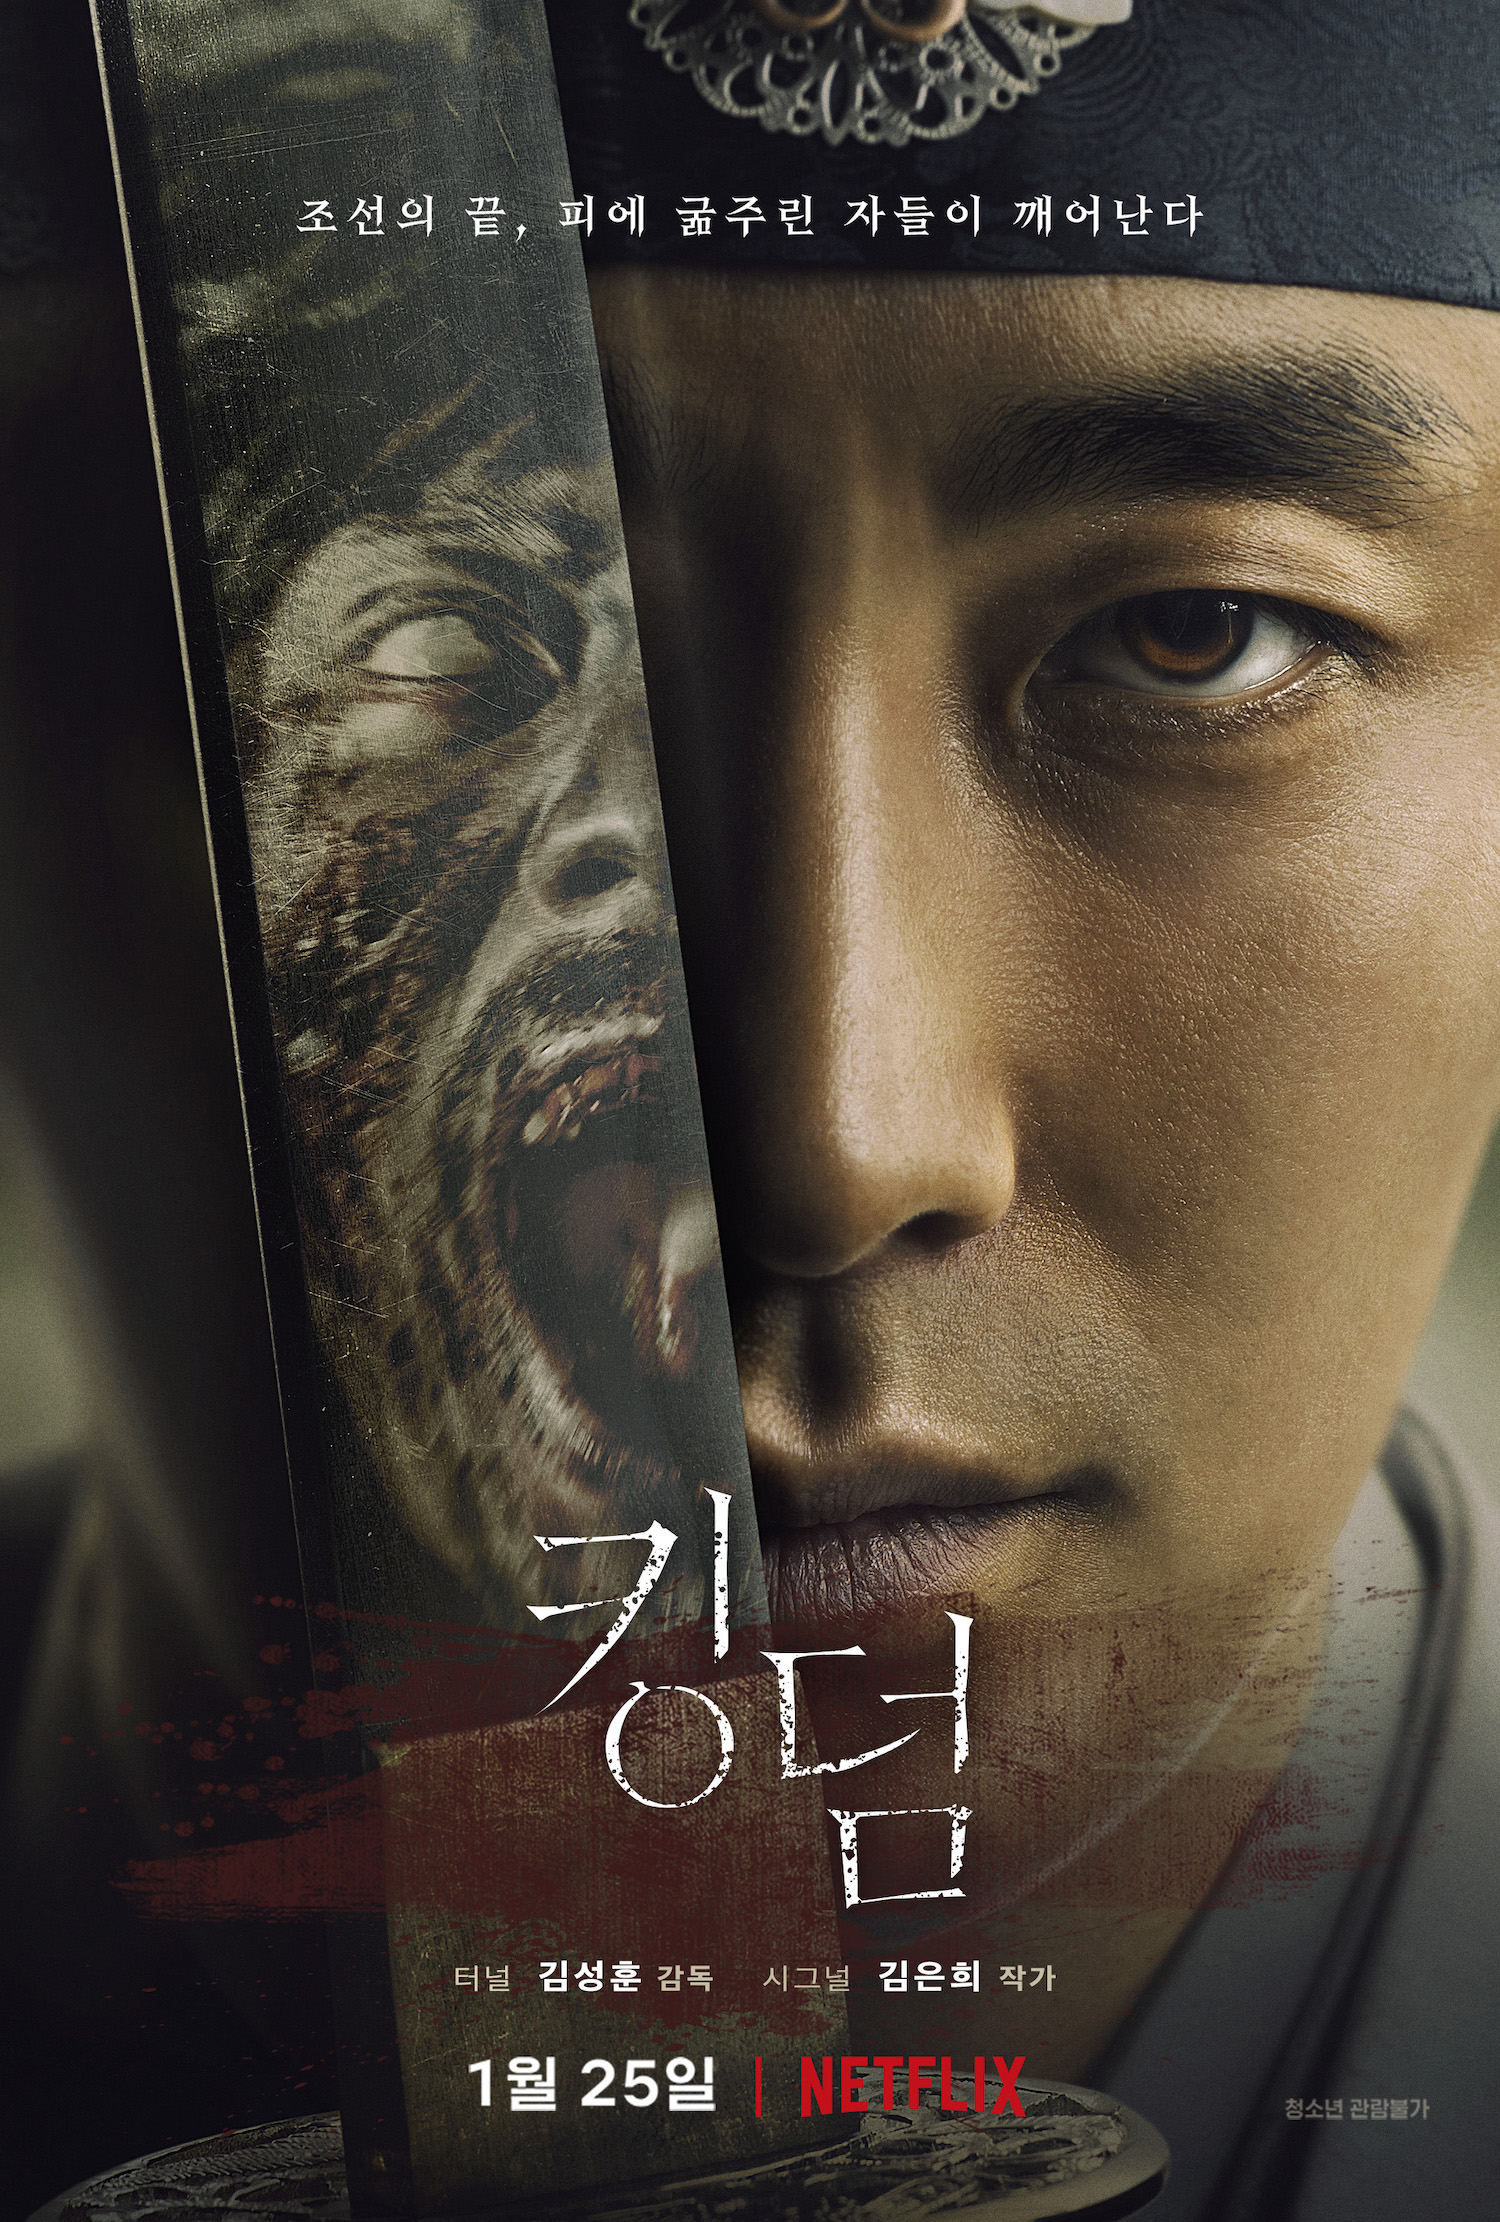 Nonton Drama Korea Kingdom (2019)